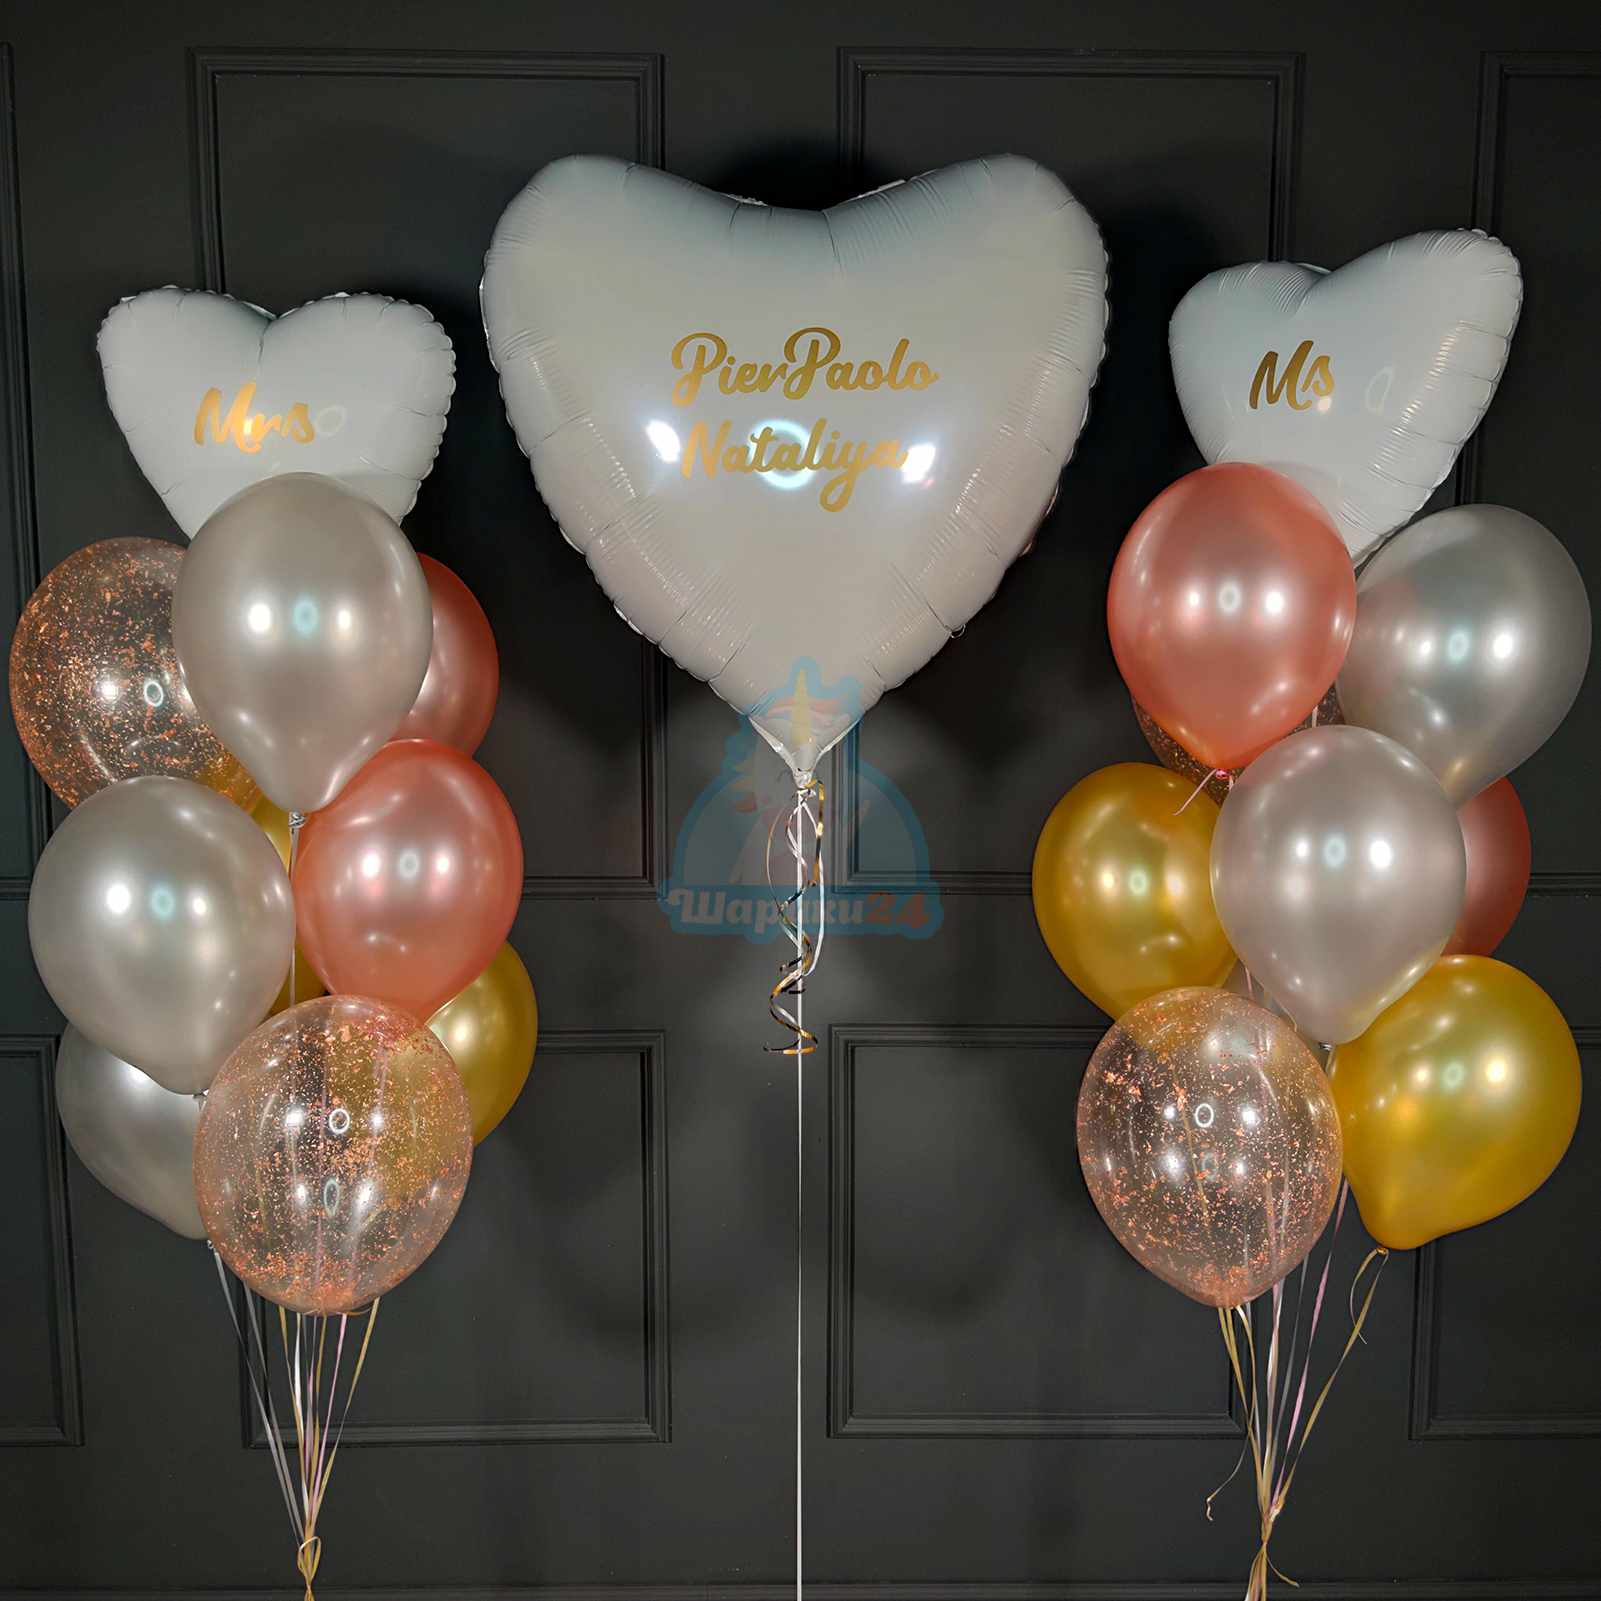 Воздушные шары на Свадьба заказать и купить с доставкой Москва недорого